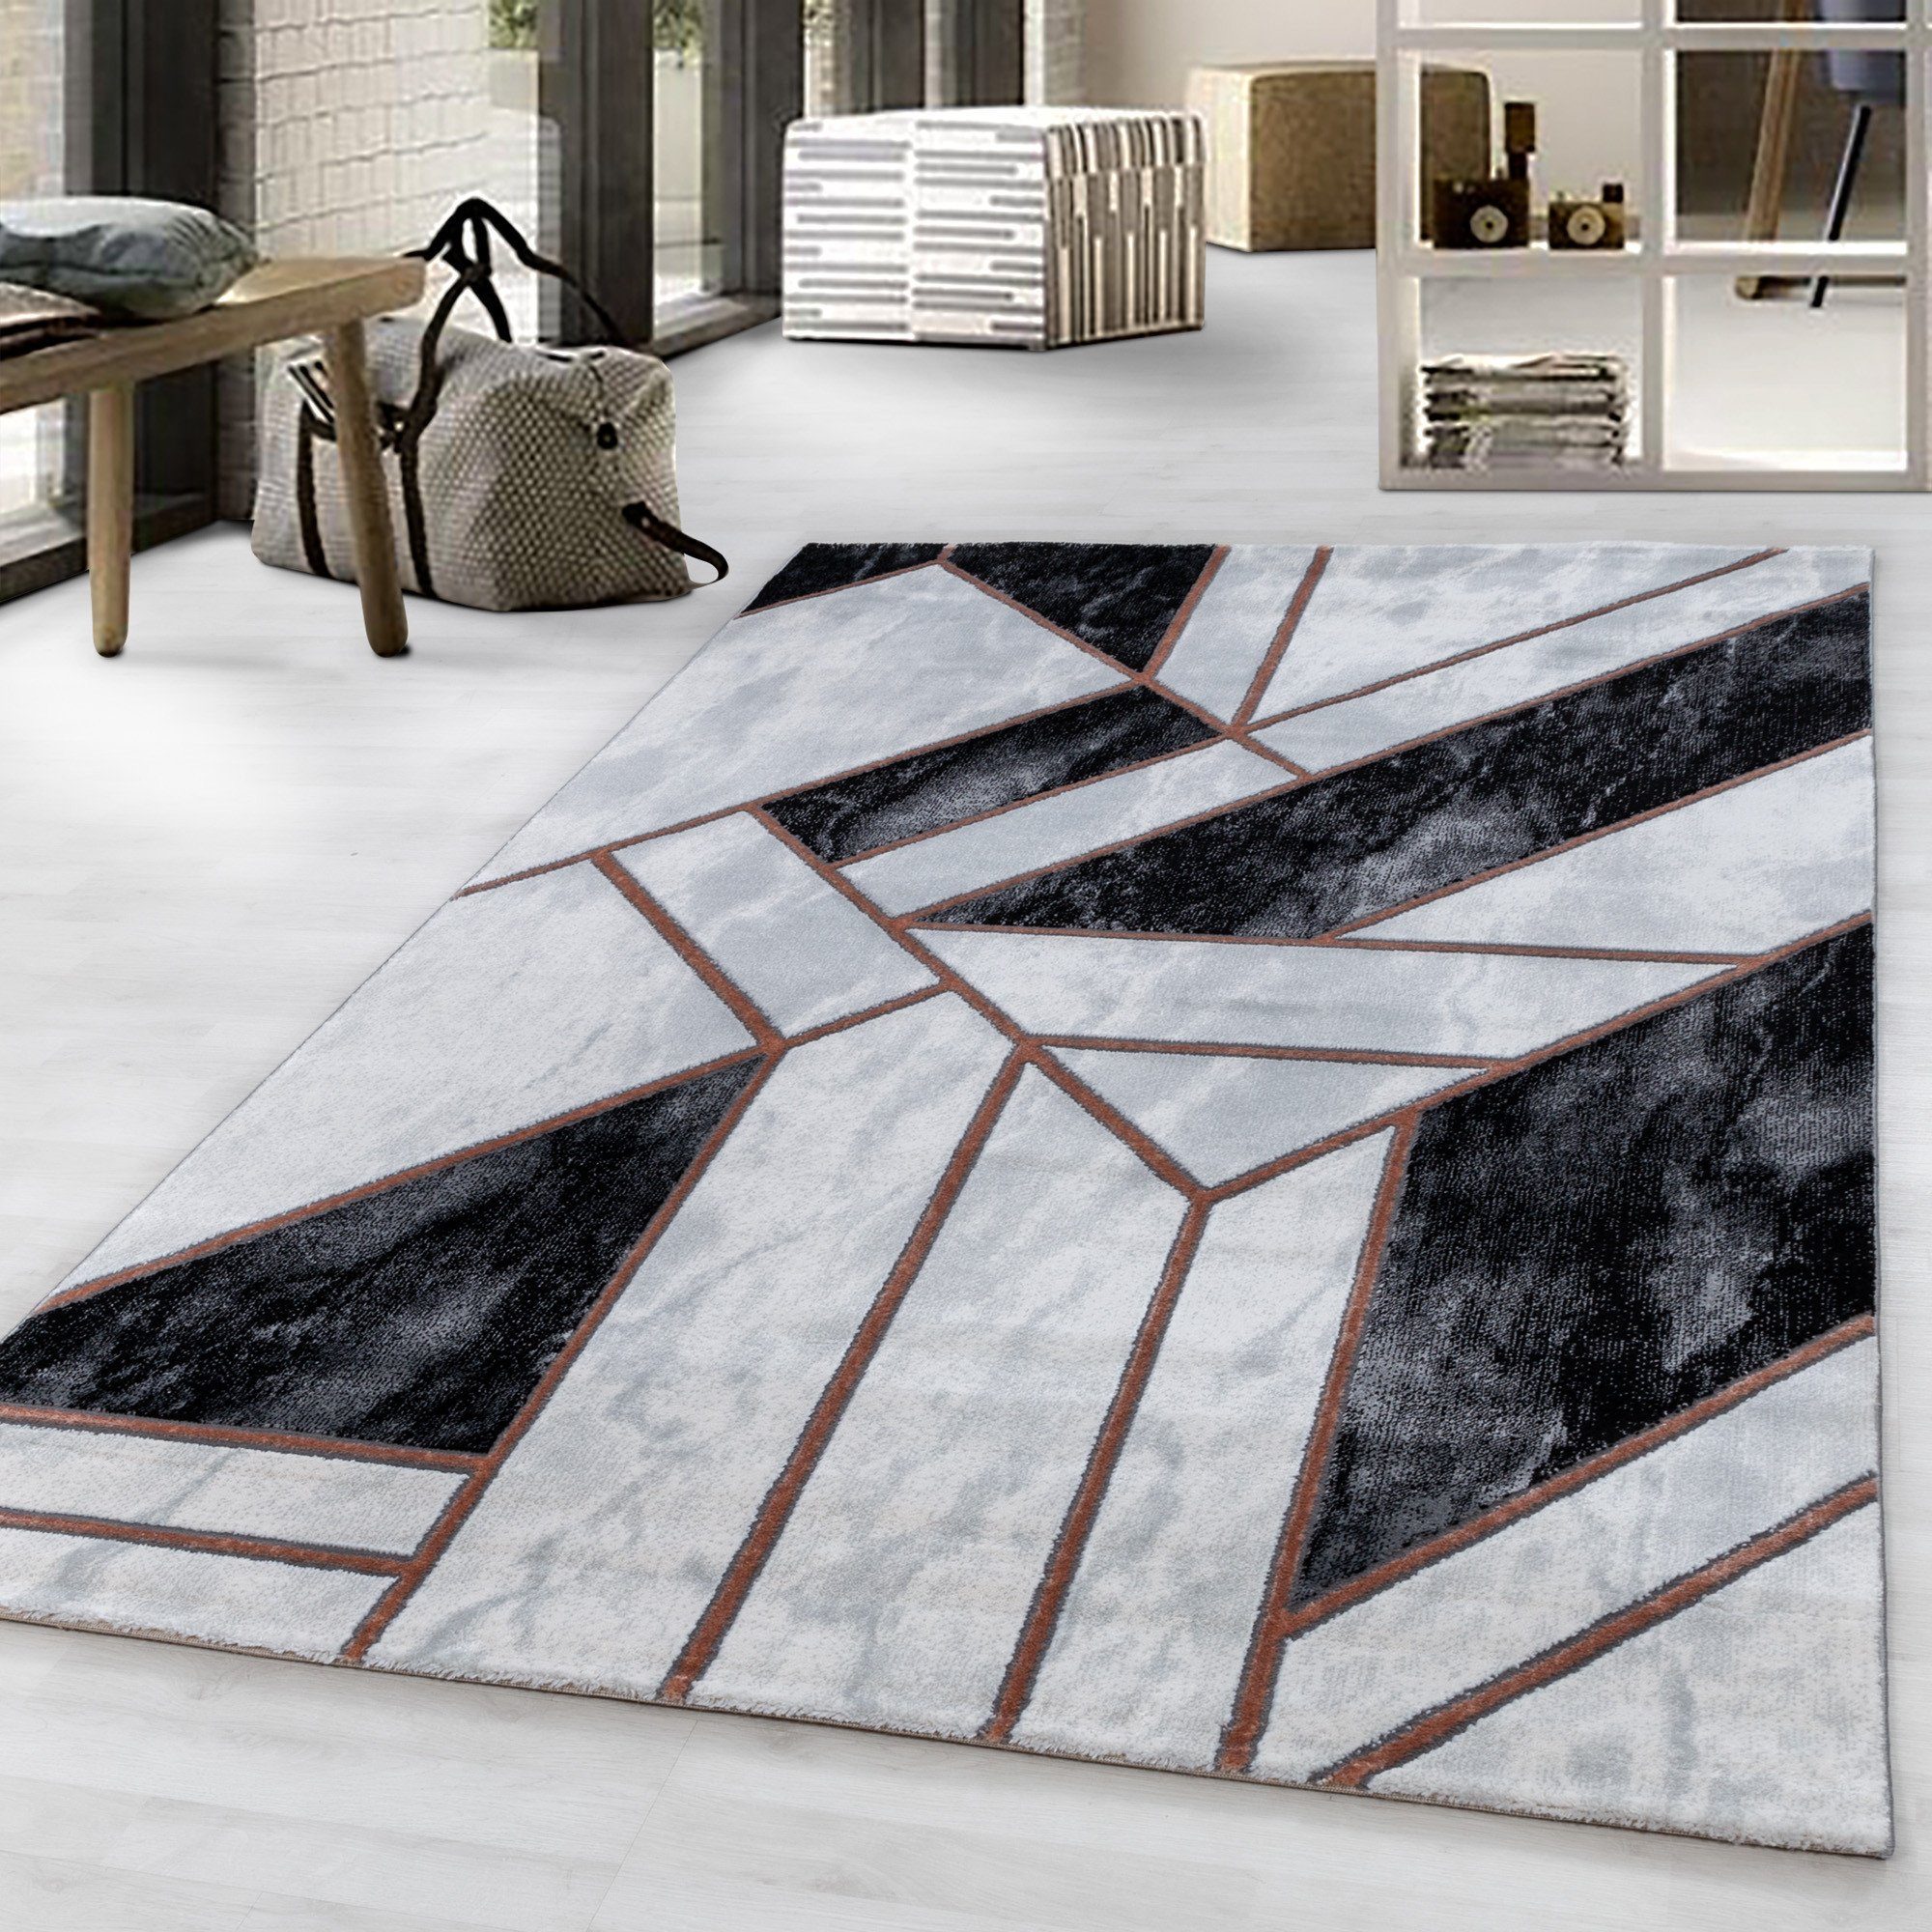 Designteppich Mosaikoptik Kurzflorteppich Flachflorteppich Schlafzimmer Wohnzimmer, Miovani Bronze